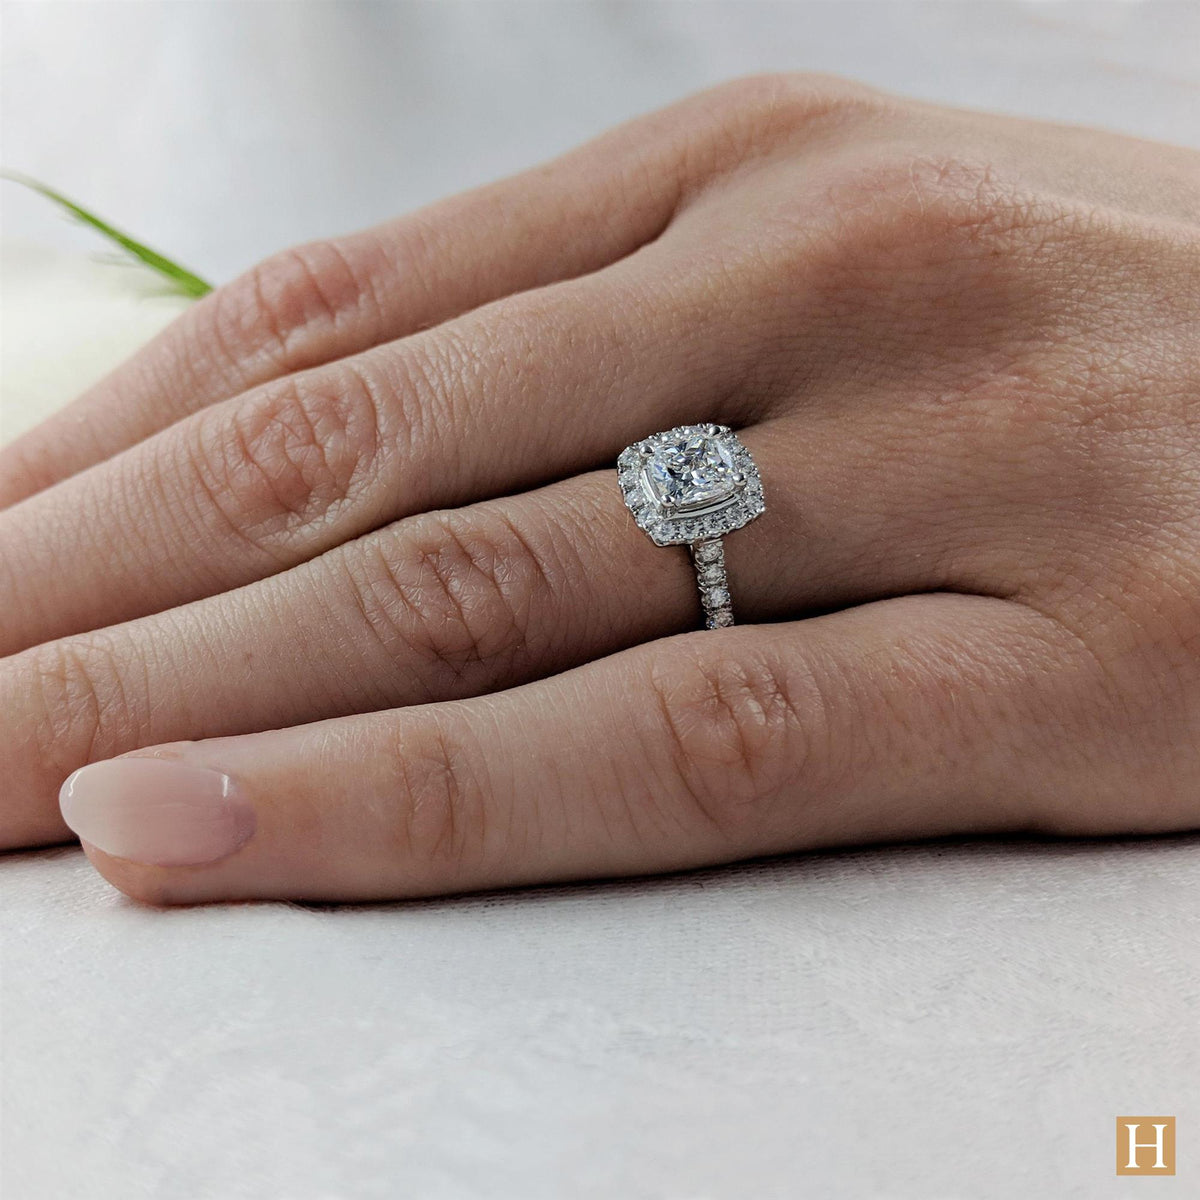 Platinum Inisheer Cushion Engagement Ring